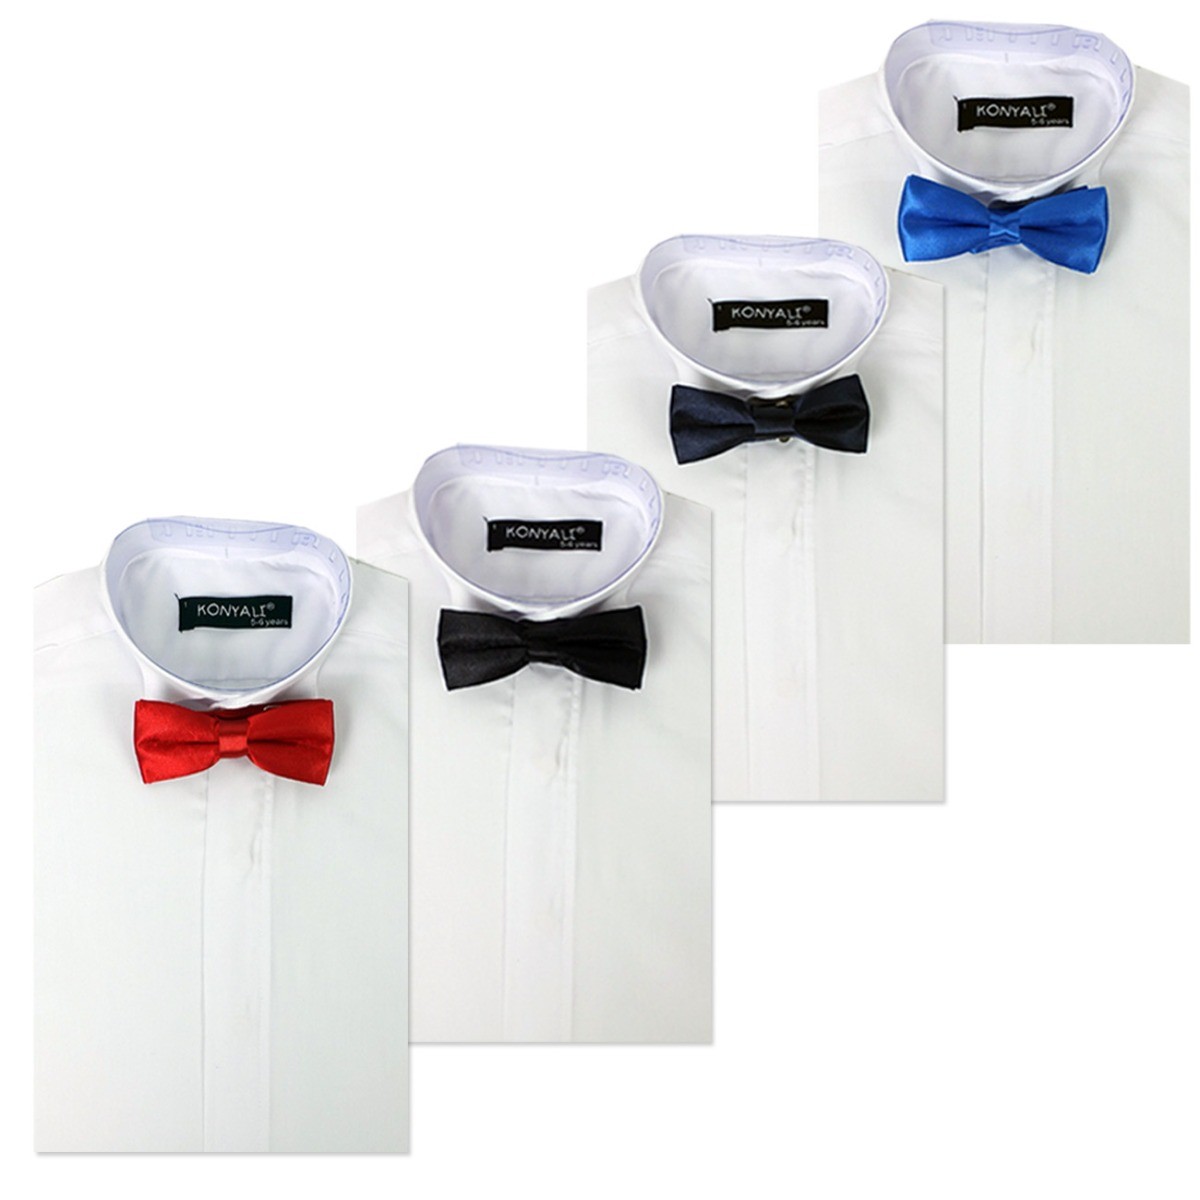 Weiß mit Auswahl der Krawattenfarbe